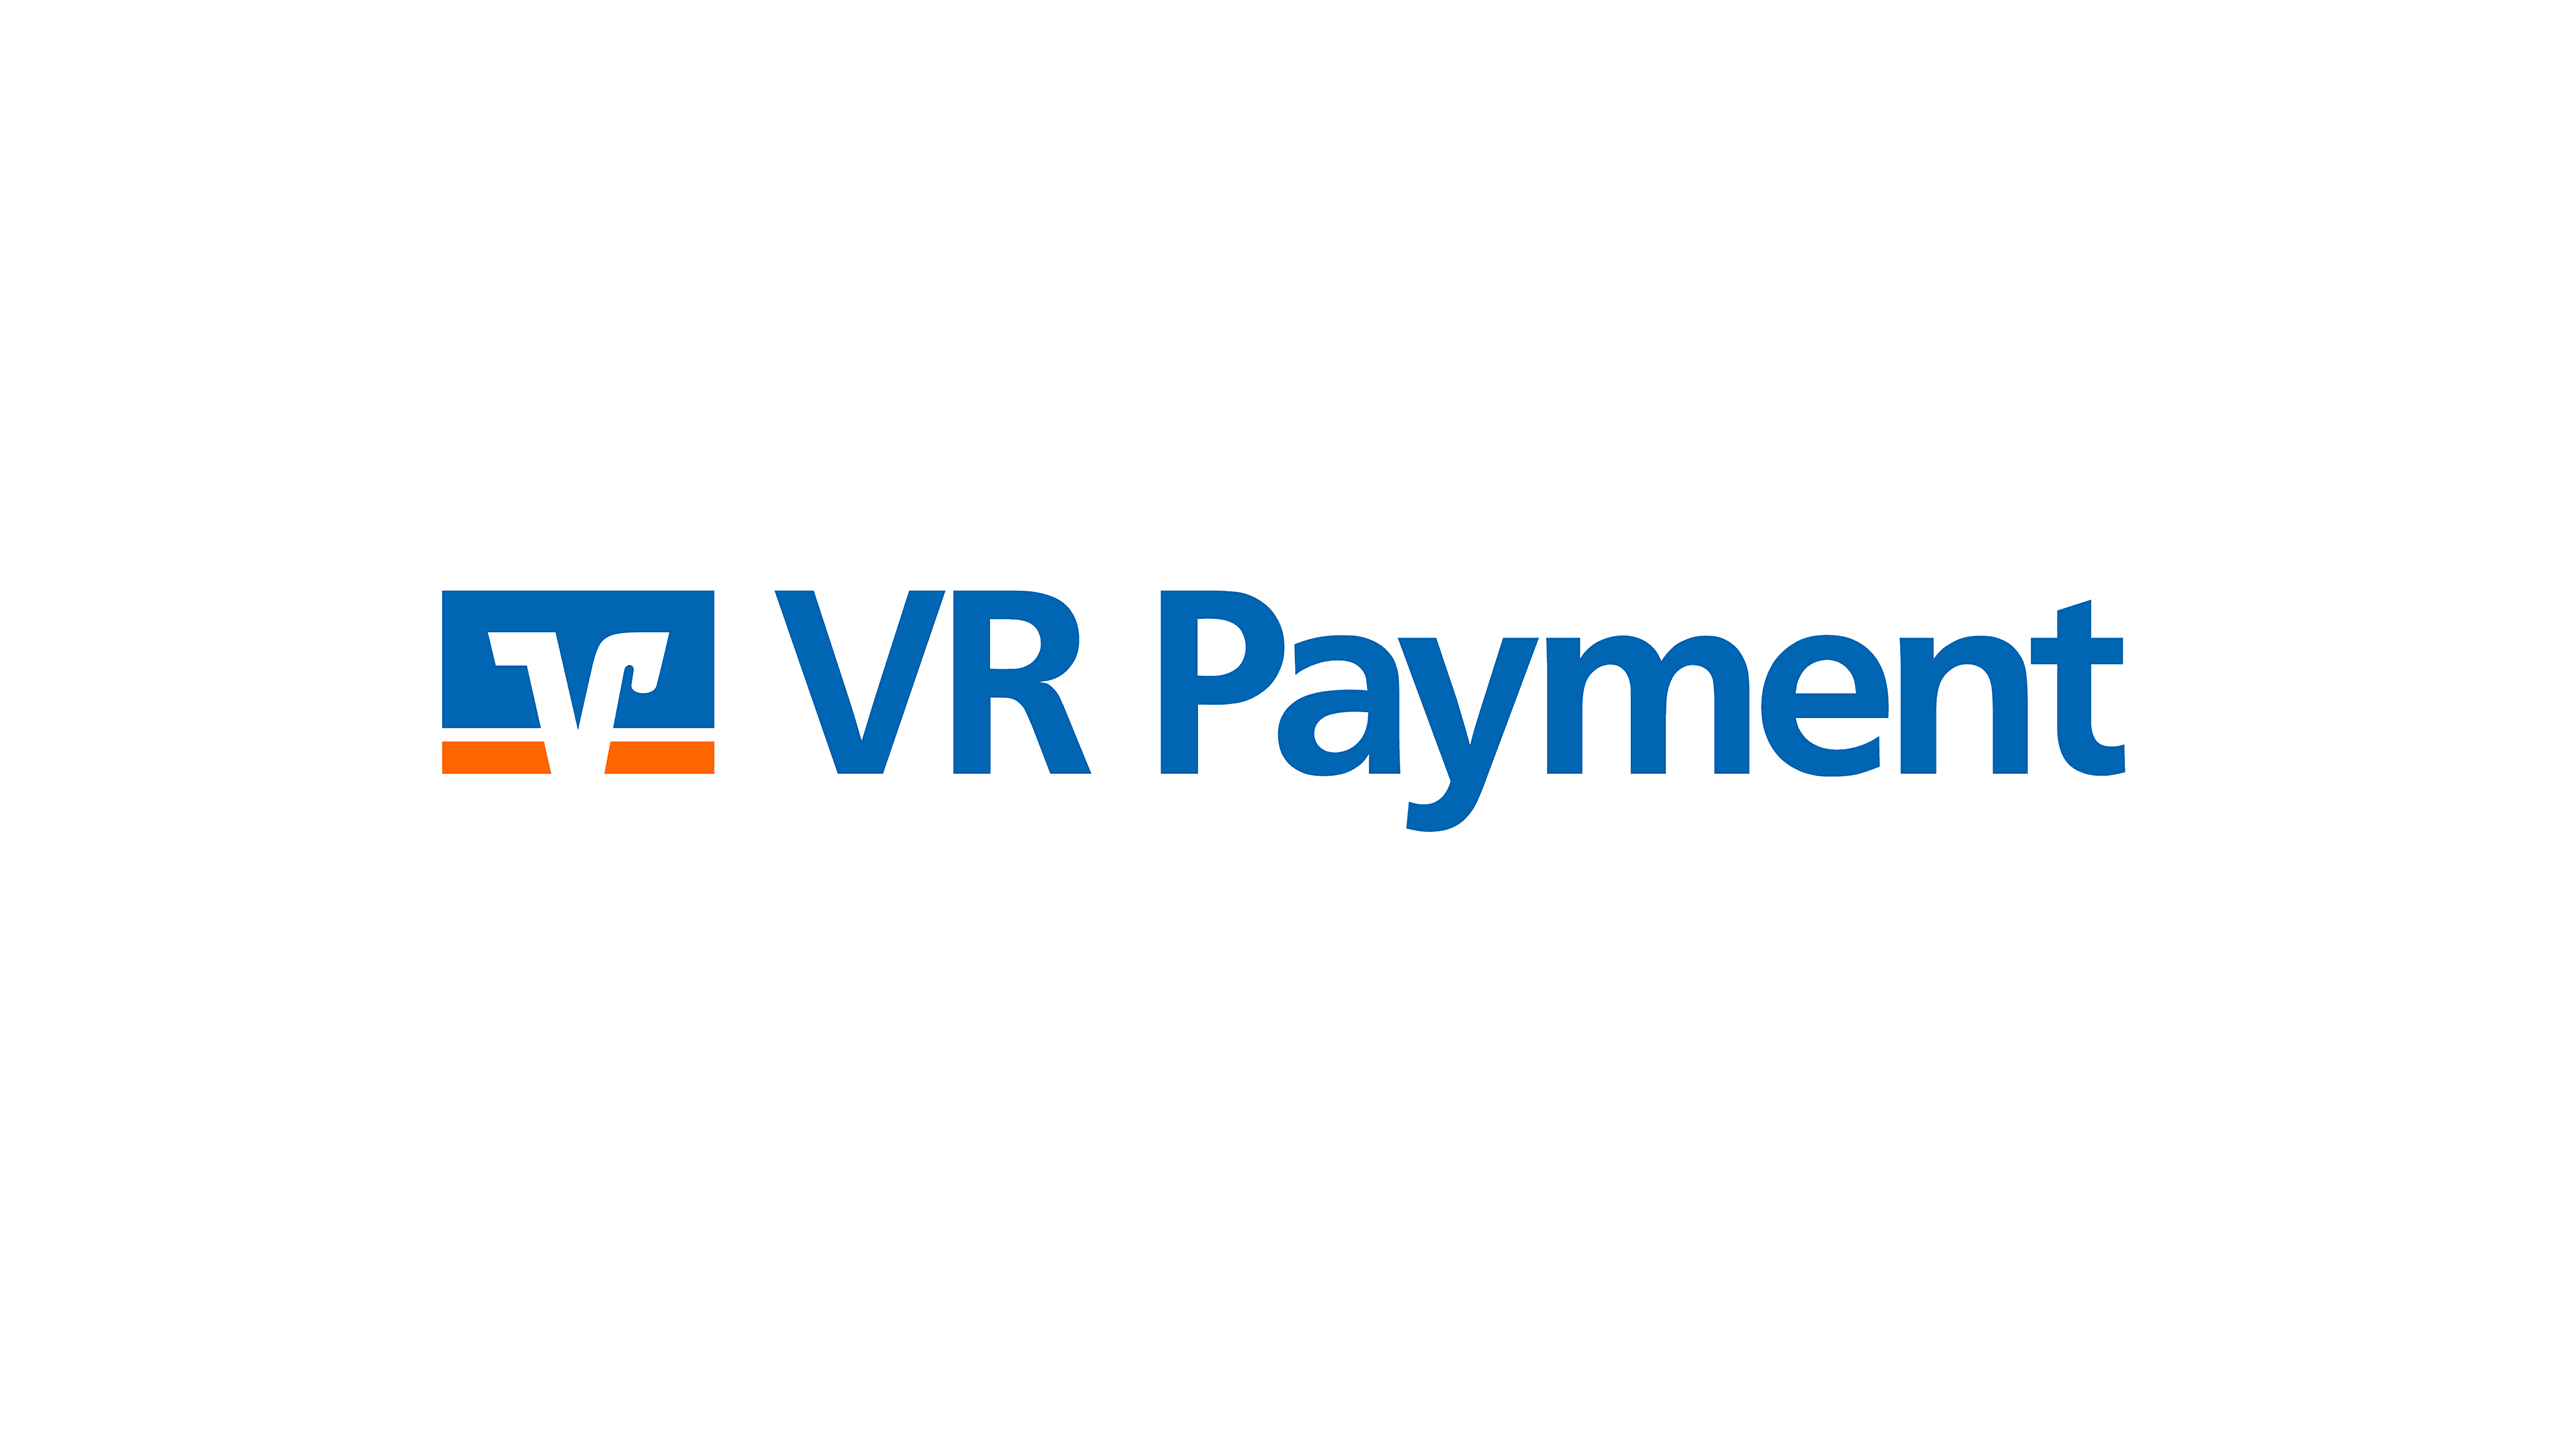 CDP2019_VR_Payment_behance4-min